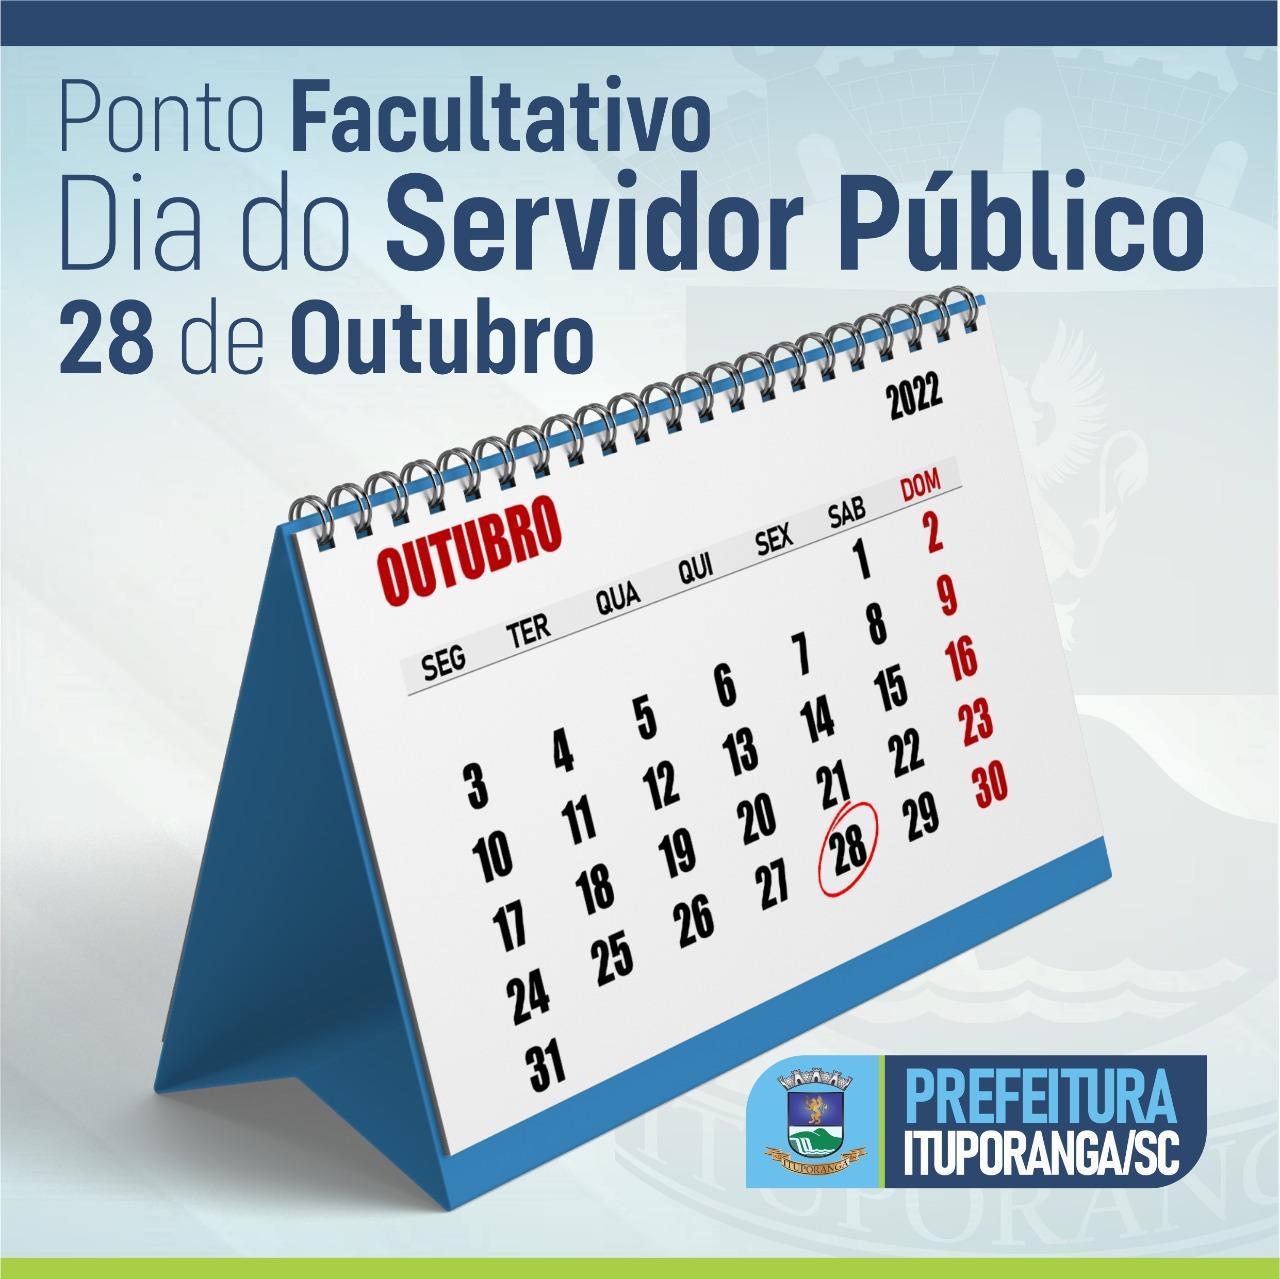 Prefeitura de Ituporanga terá ponto facultativo nesta sexta-feira (28) pelo Dia do Servidor Público